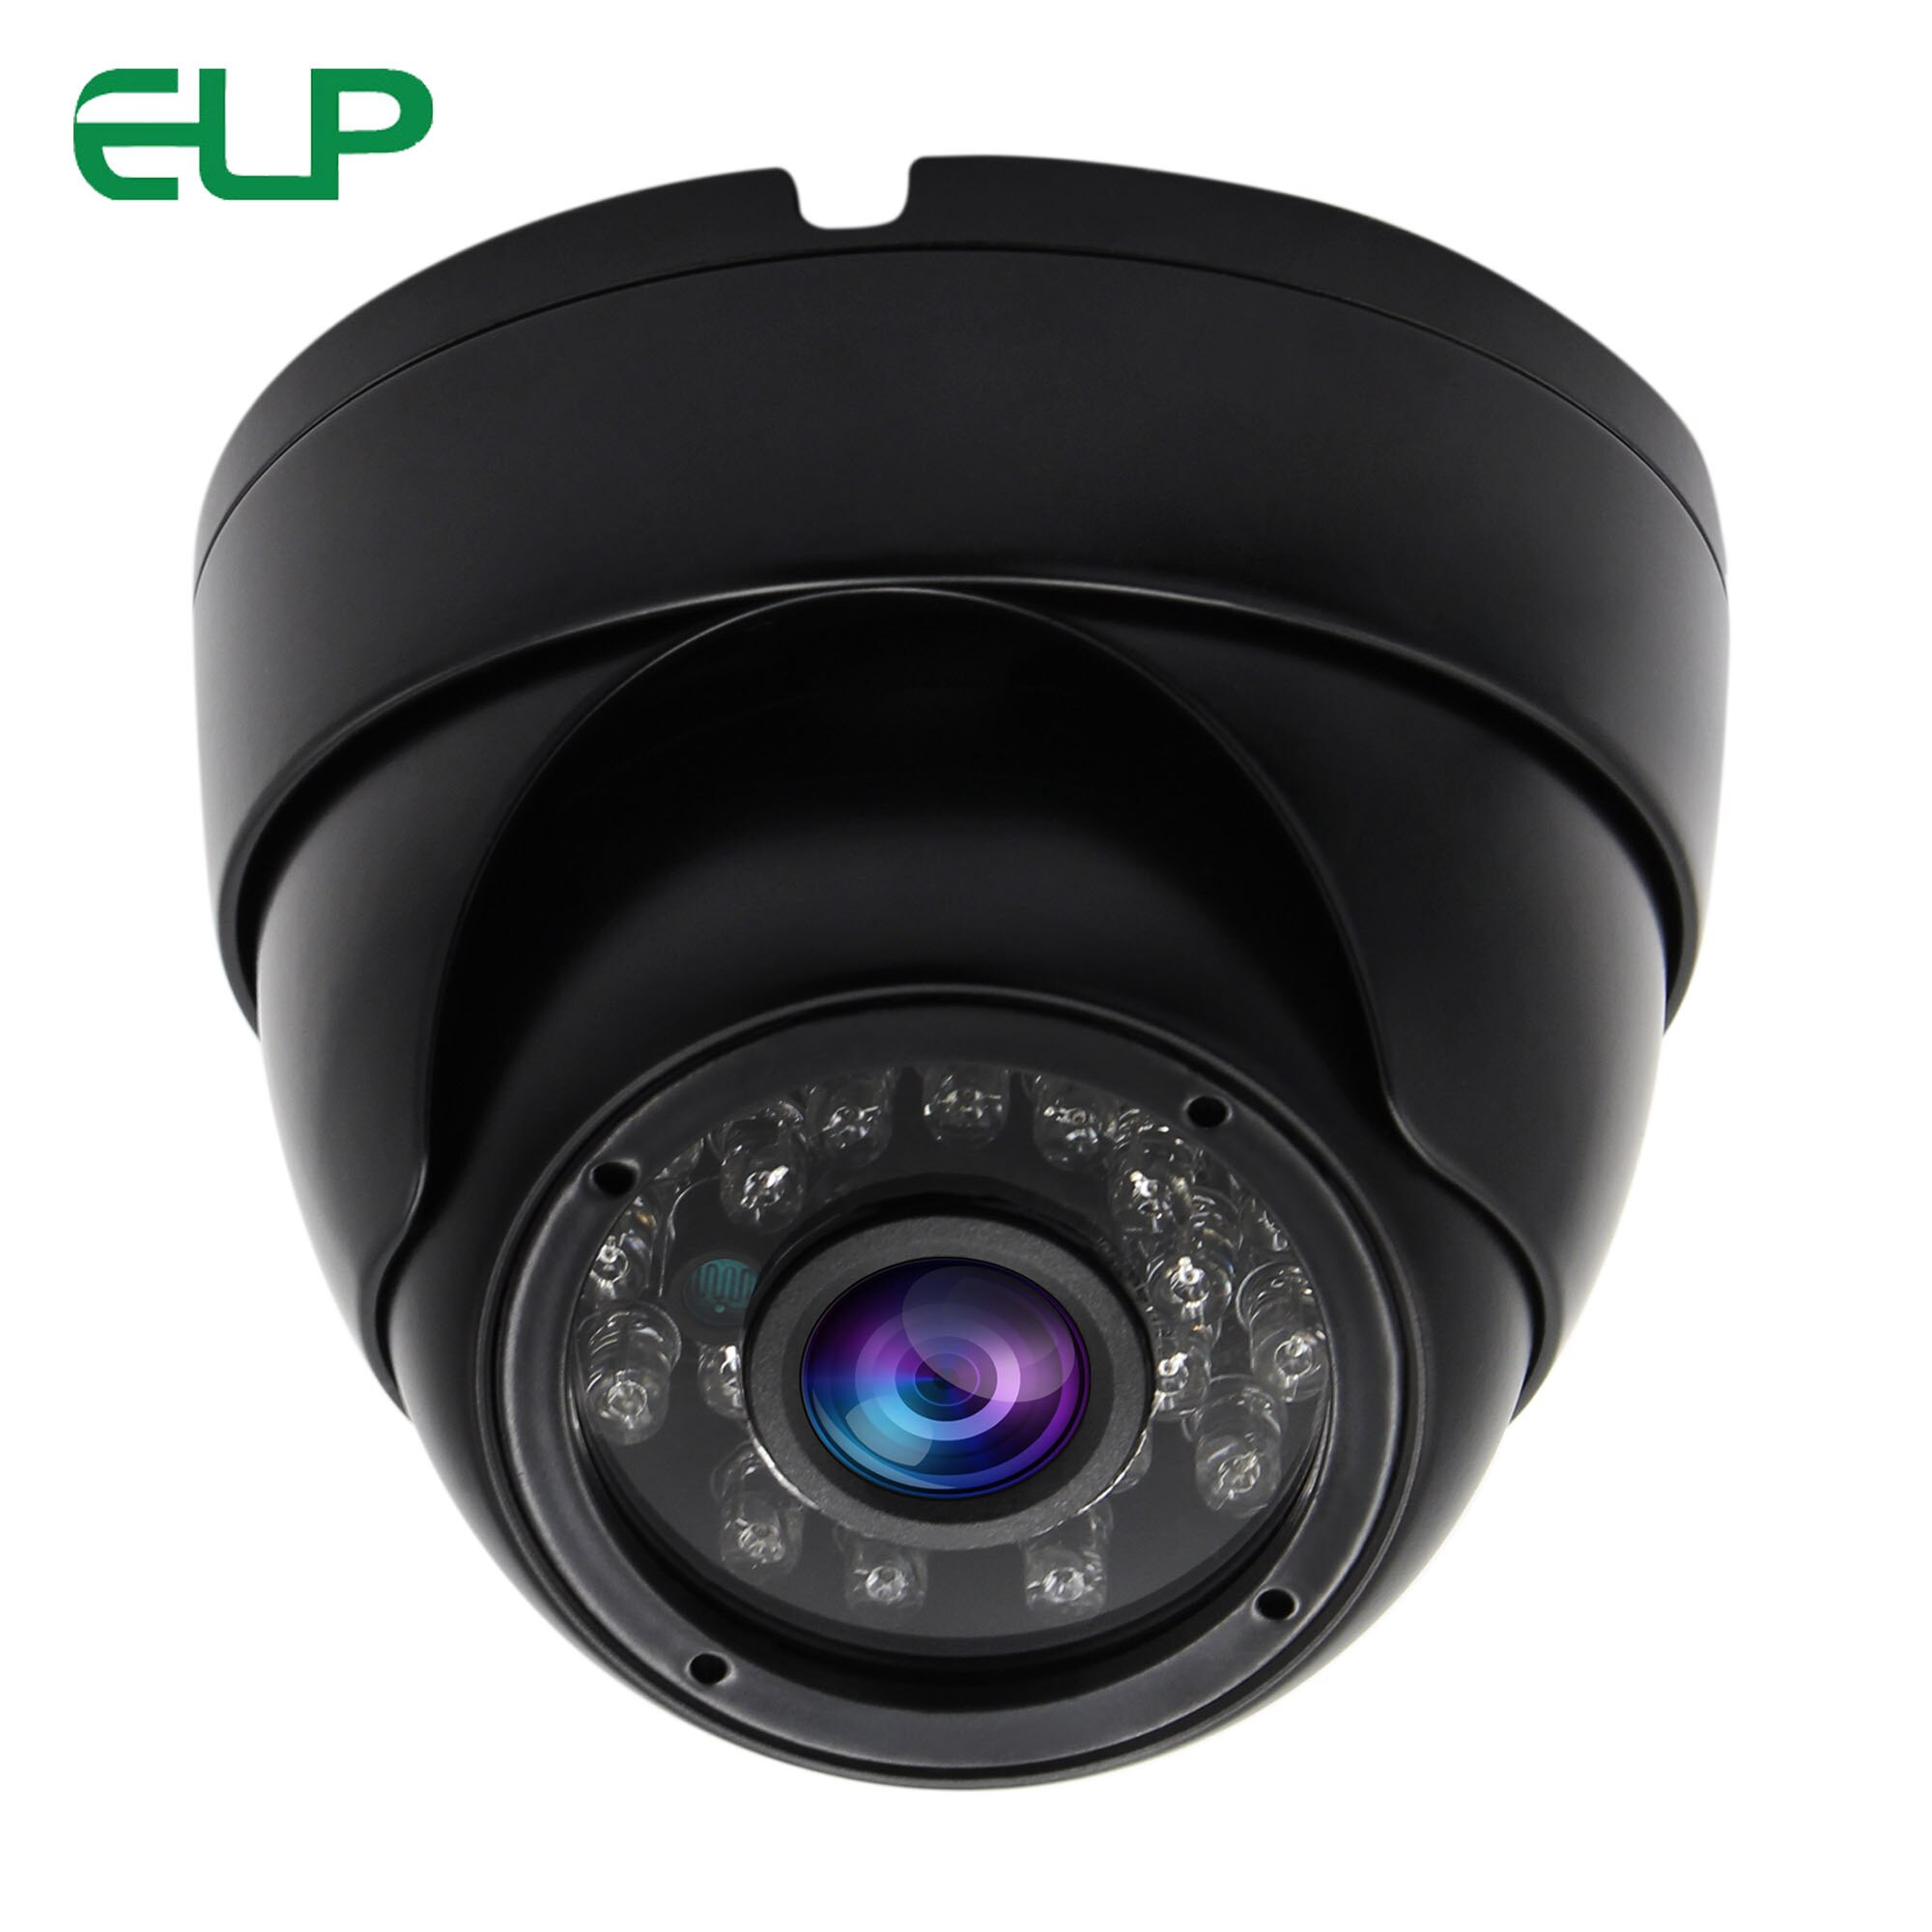 Elp 1 megapixel 720p dages nattesyn infrarød ir usb kamera, cctv sikkerhed vandtæt usb dome webcam til android, windows, mac